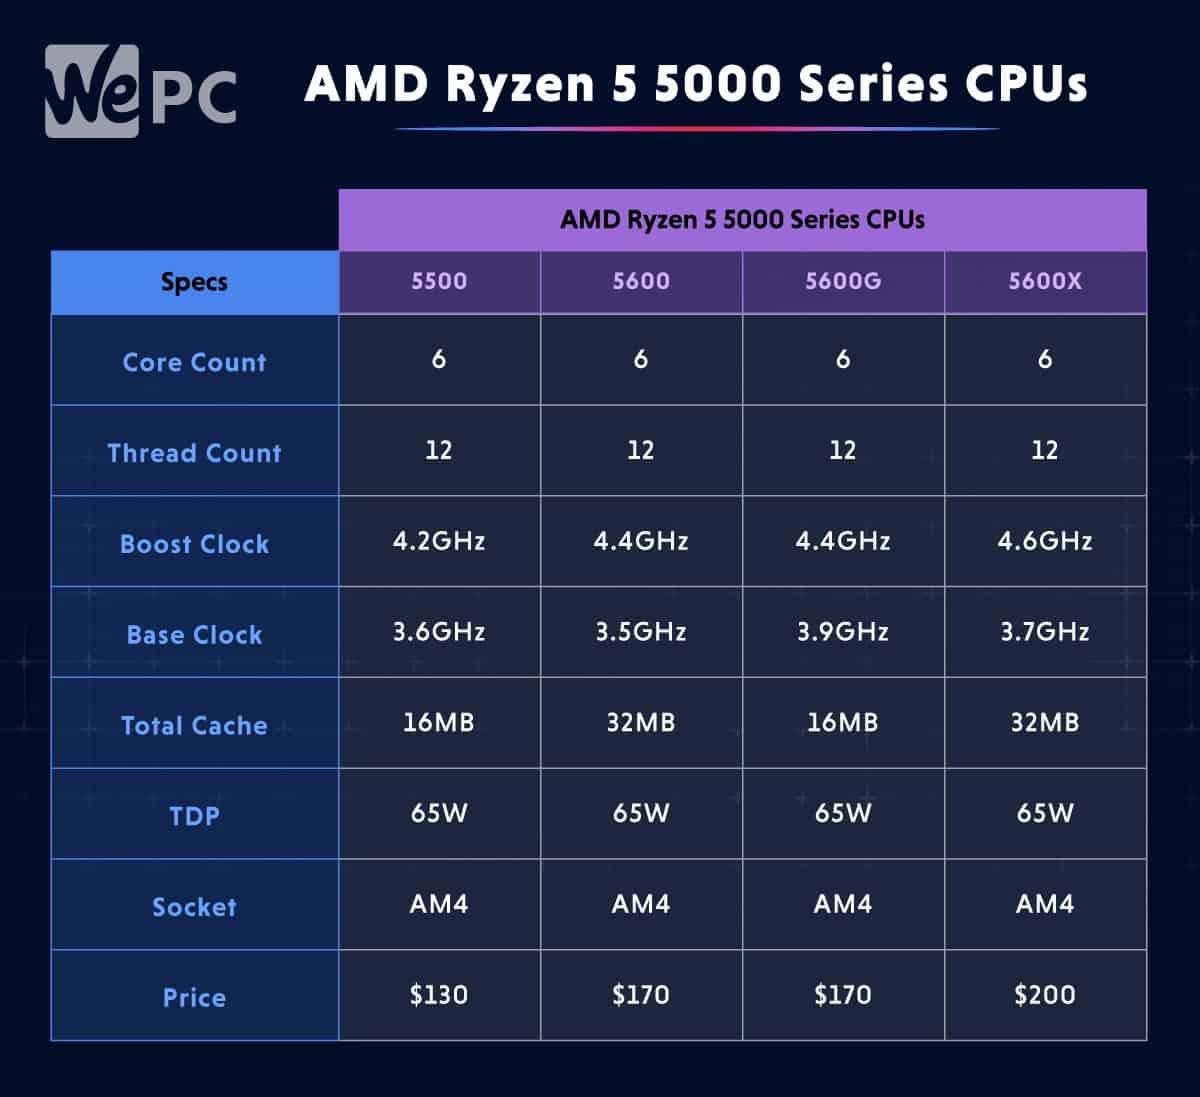 AMD Ryzen 5 5000 Series CPUs